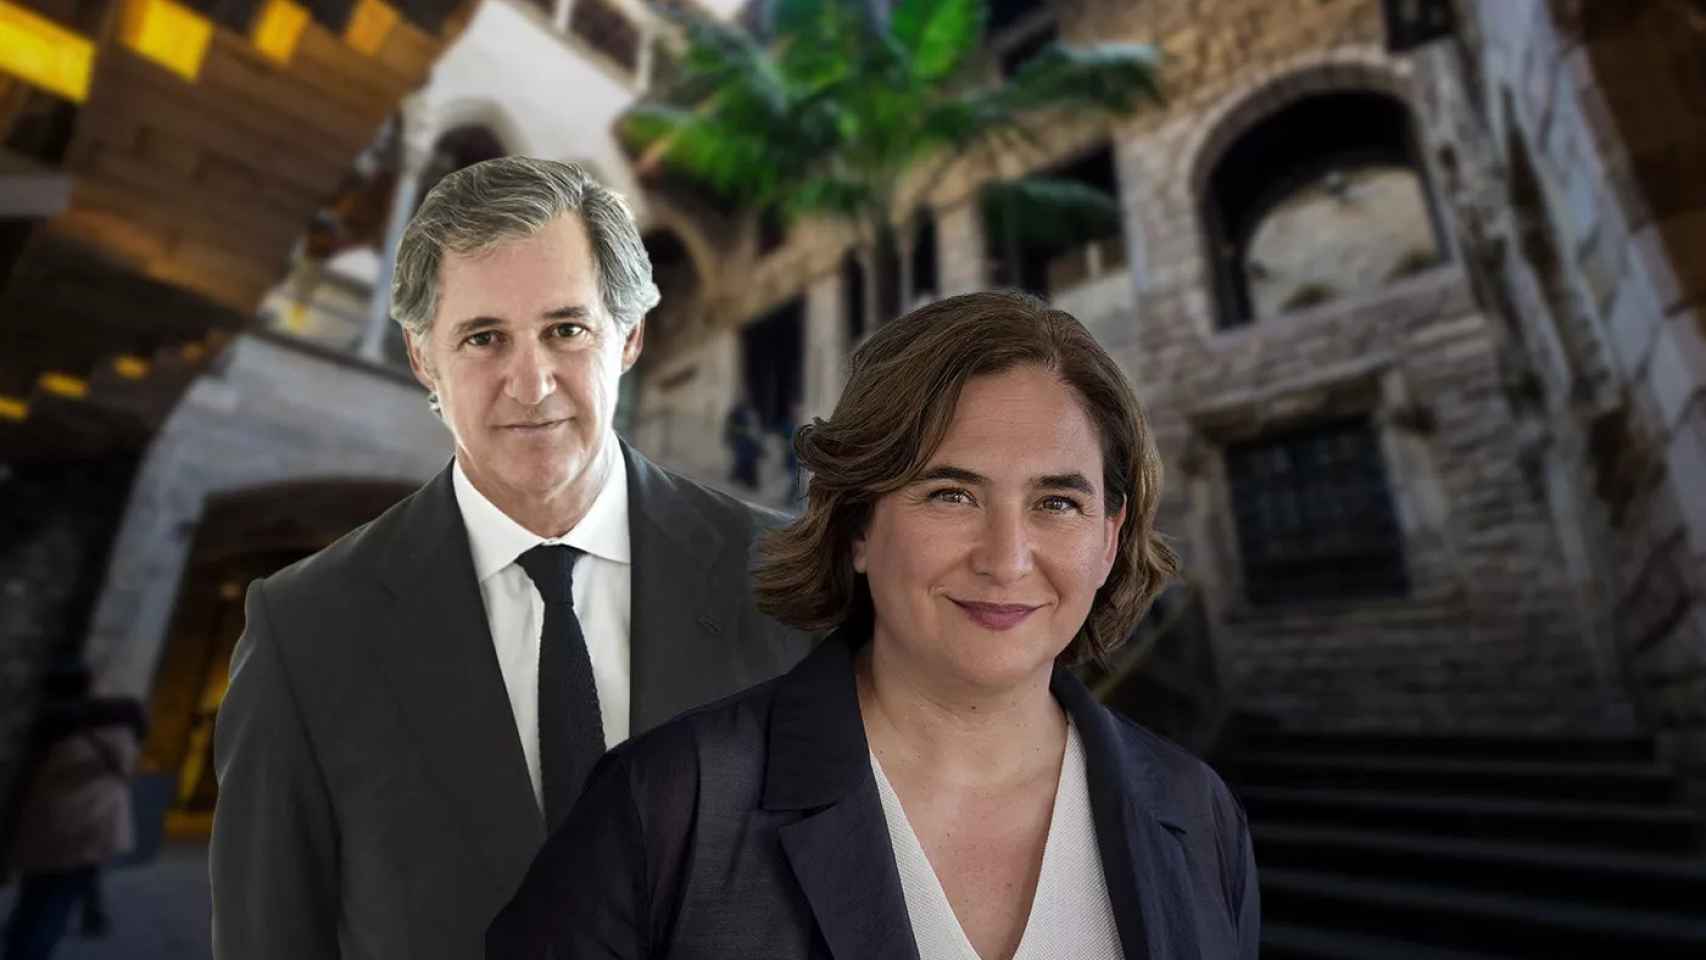 José Manuel Entrecanales y Ada Colau, con el Museu Picasso de fondo / FOTOMONTAJE METRÓPOLI